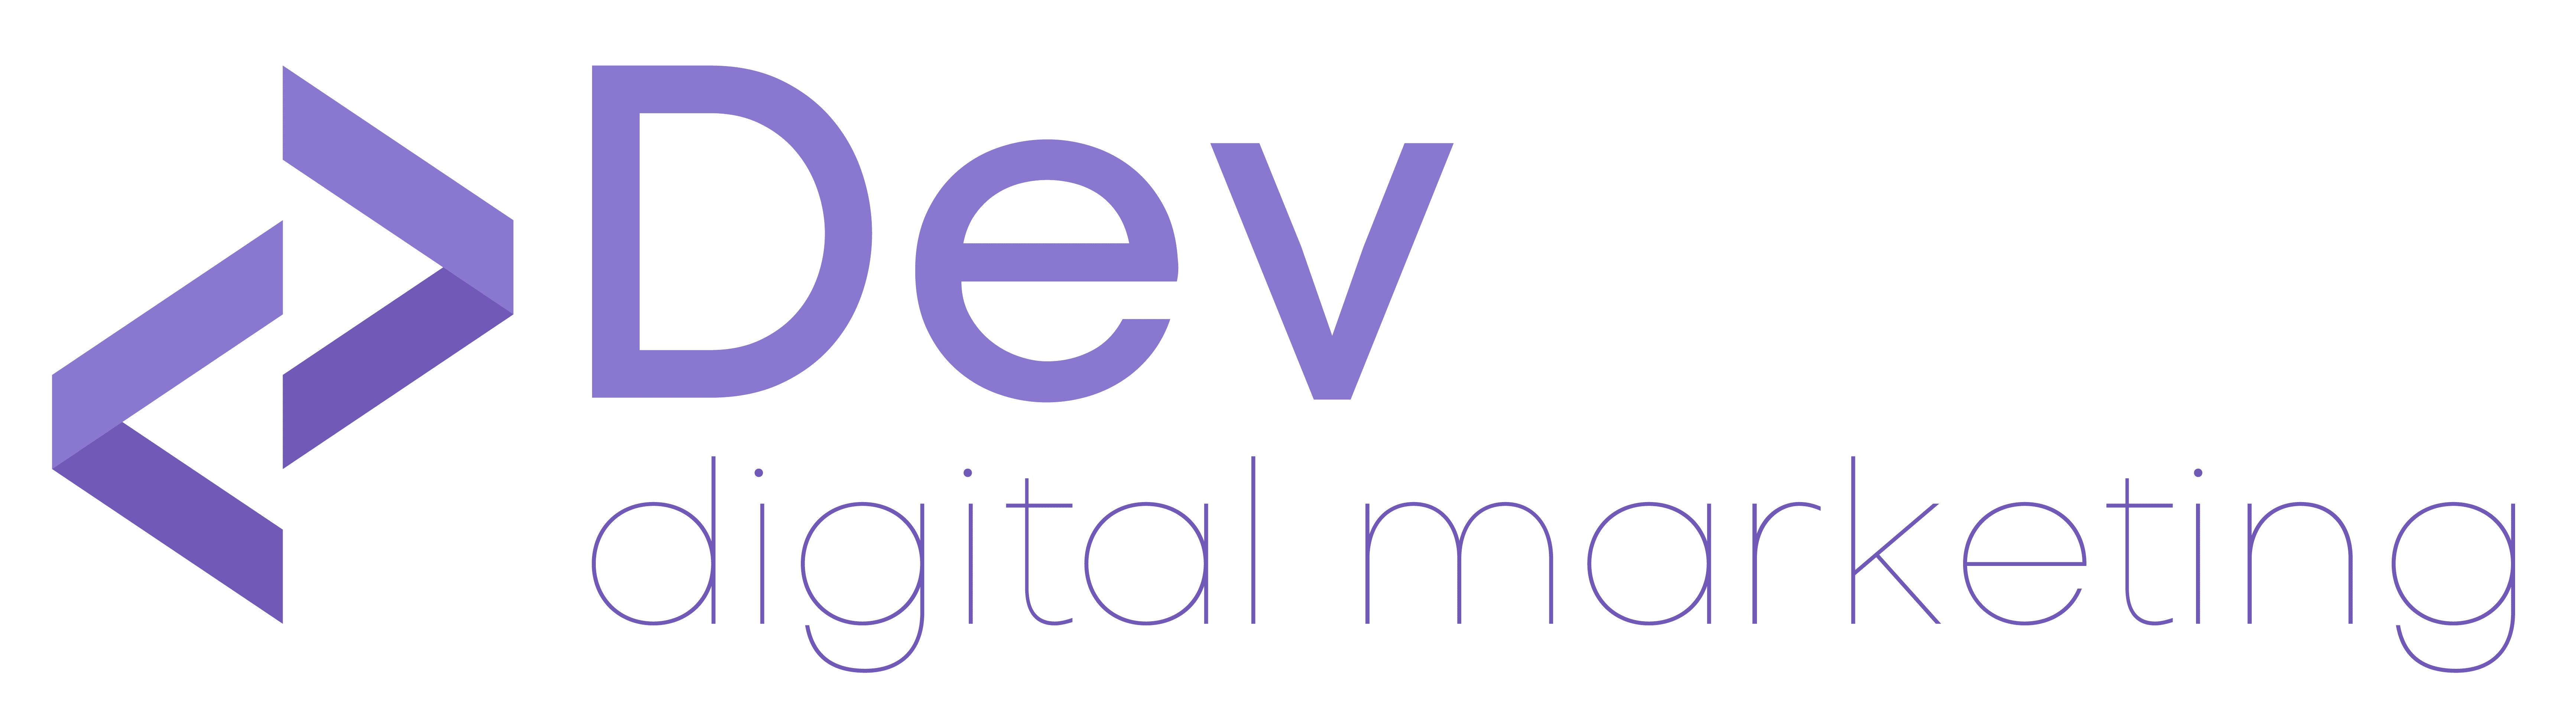 DevWatt Digital Marketing Logo